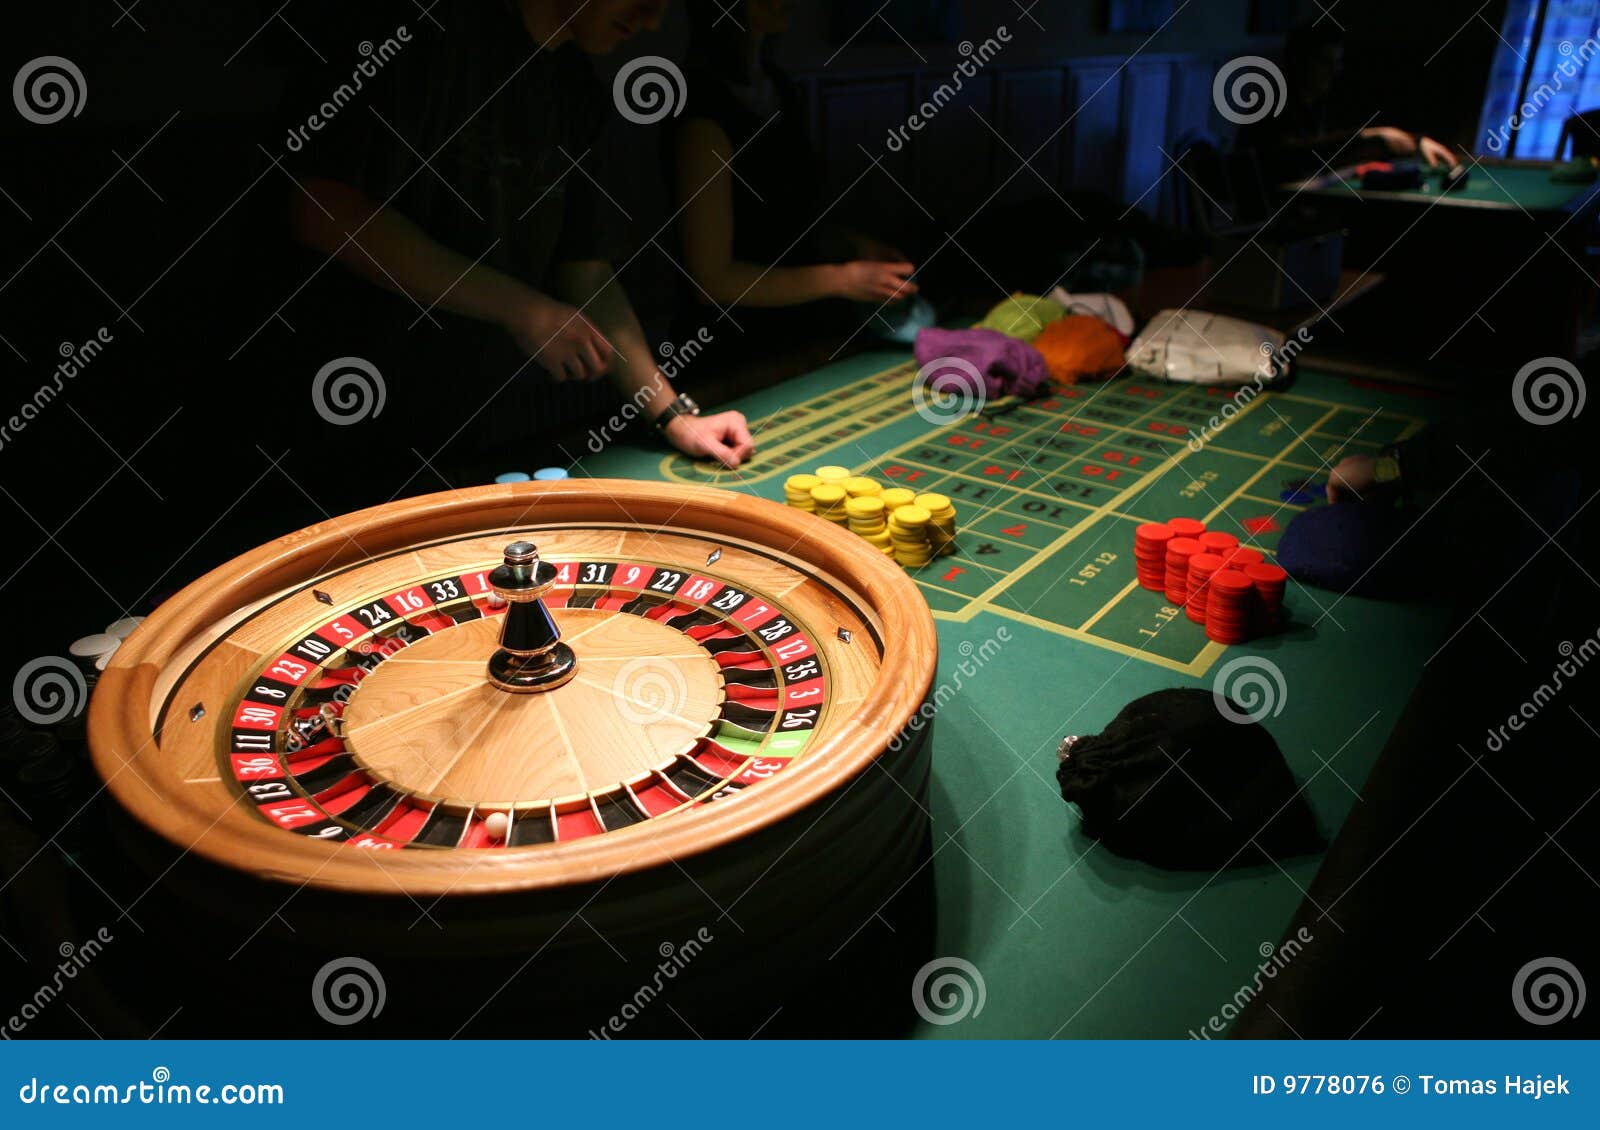 赌场轮盘赌桌 库存图片. 图片 包括有 轮子, 胜利, 乐趣, 运气, 货币, 作用, 成功, 休闲, 轮盘赌 - 60108763